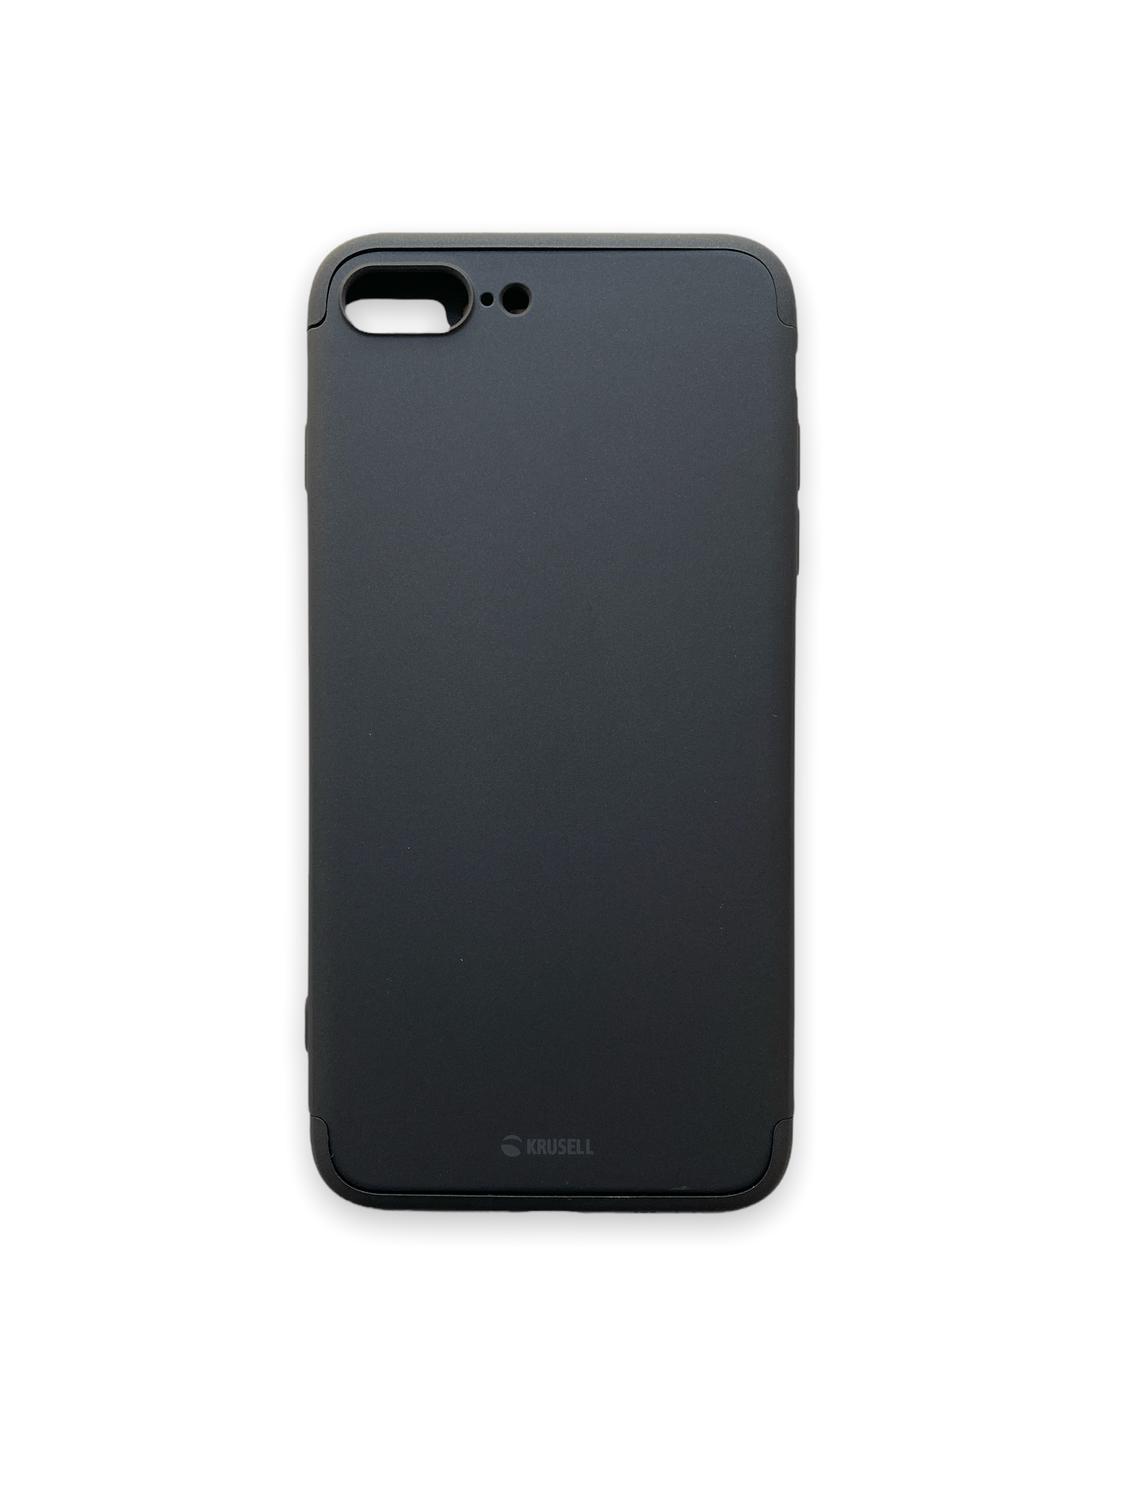 Apple iPhone 8 Plus / 7 Plus Silicone Case - Black